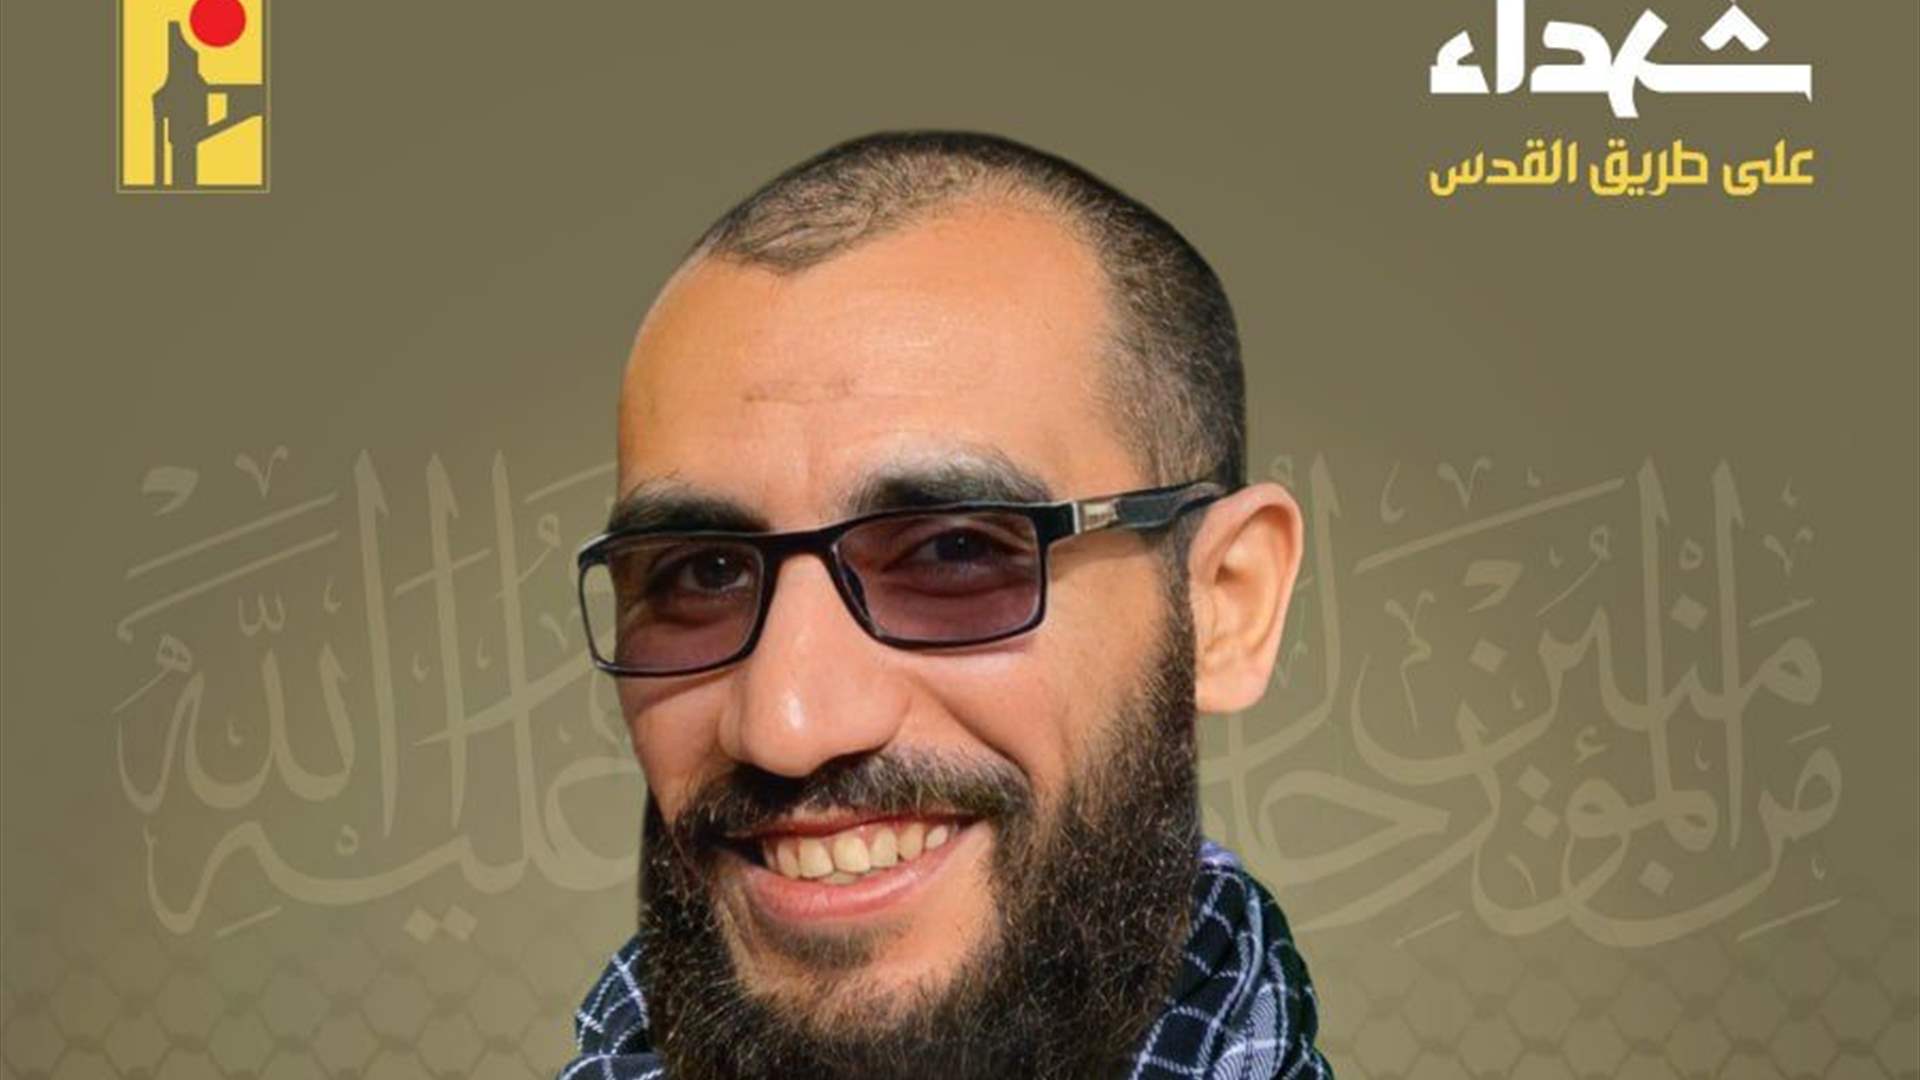 المقاومة الاسلامية تنعى الشهيد محمد باقر حسان بسام &quot;خميني&quot; من بلدة عيناثا في جنوب لبنان